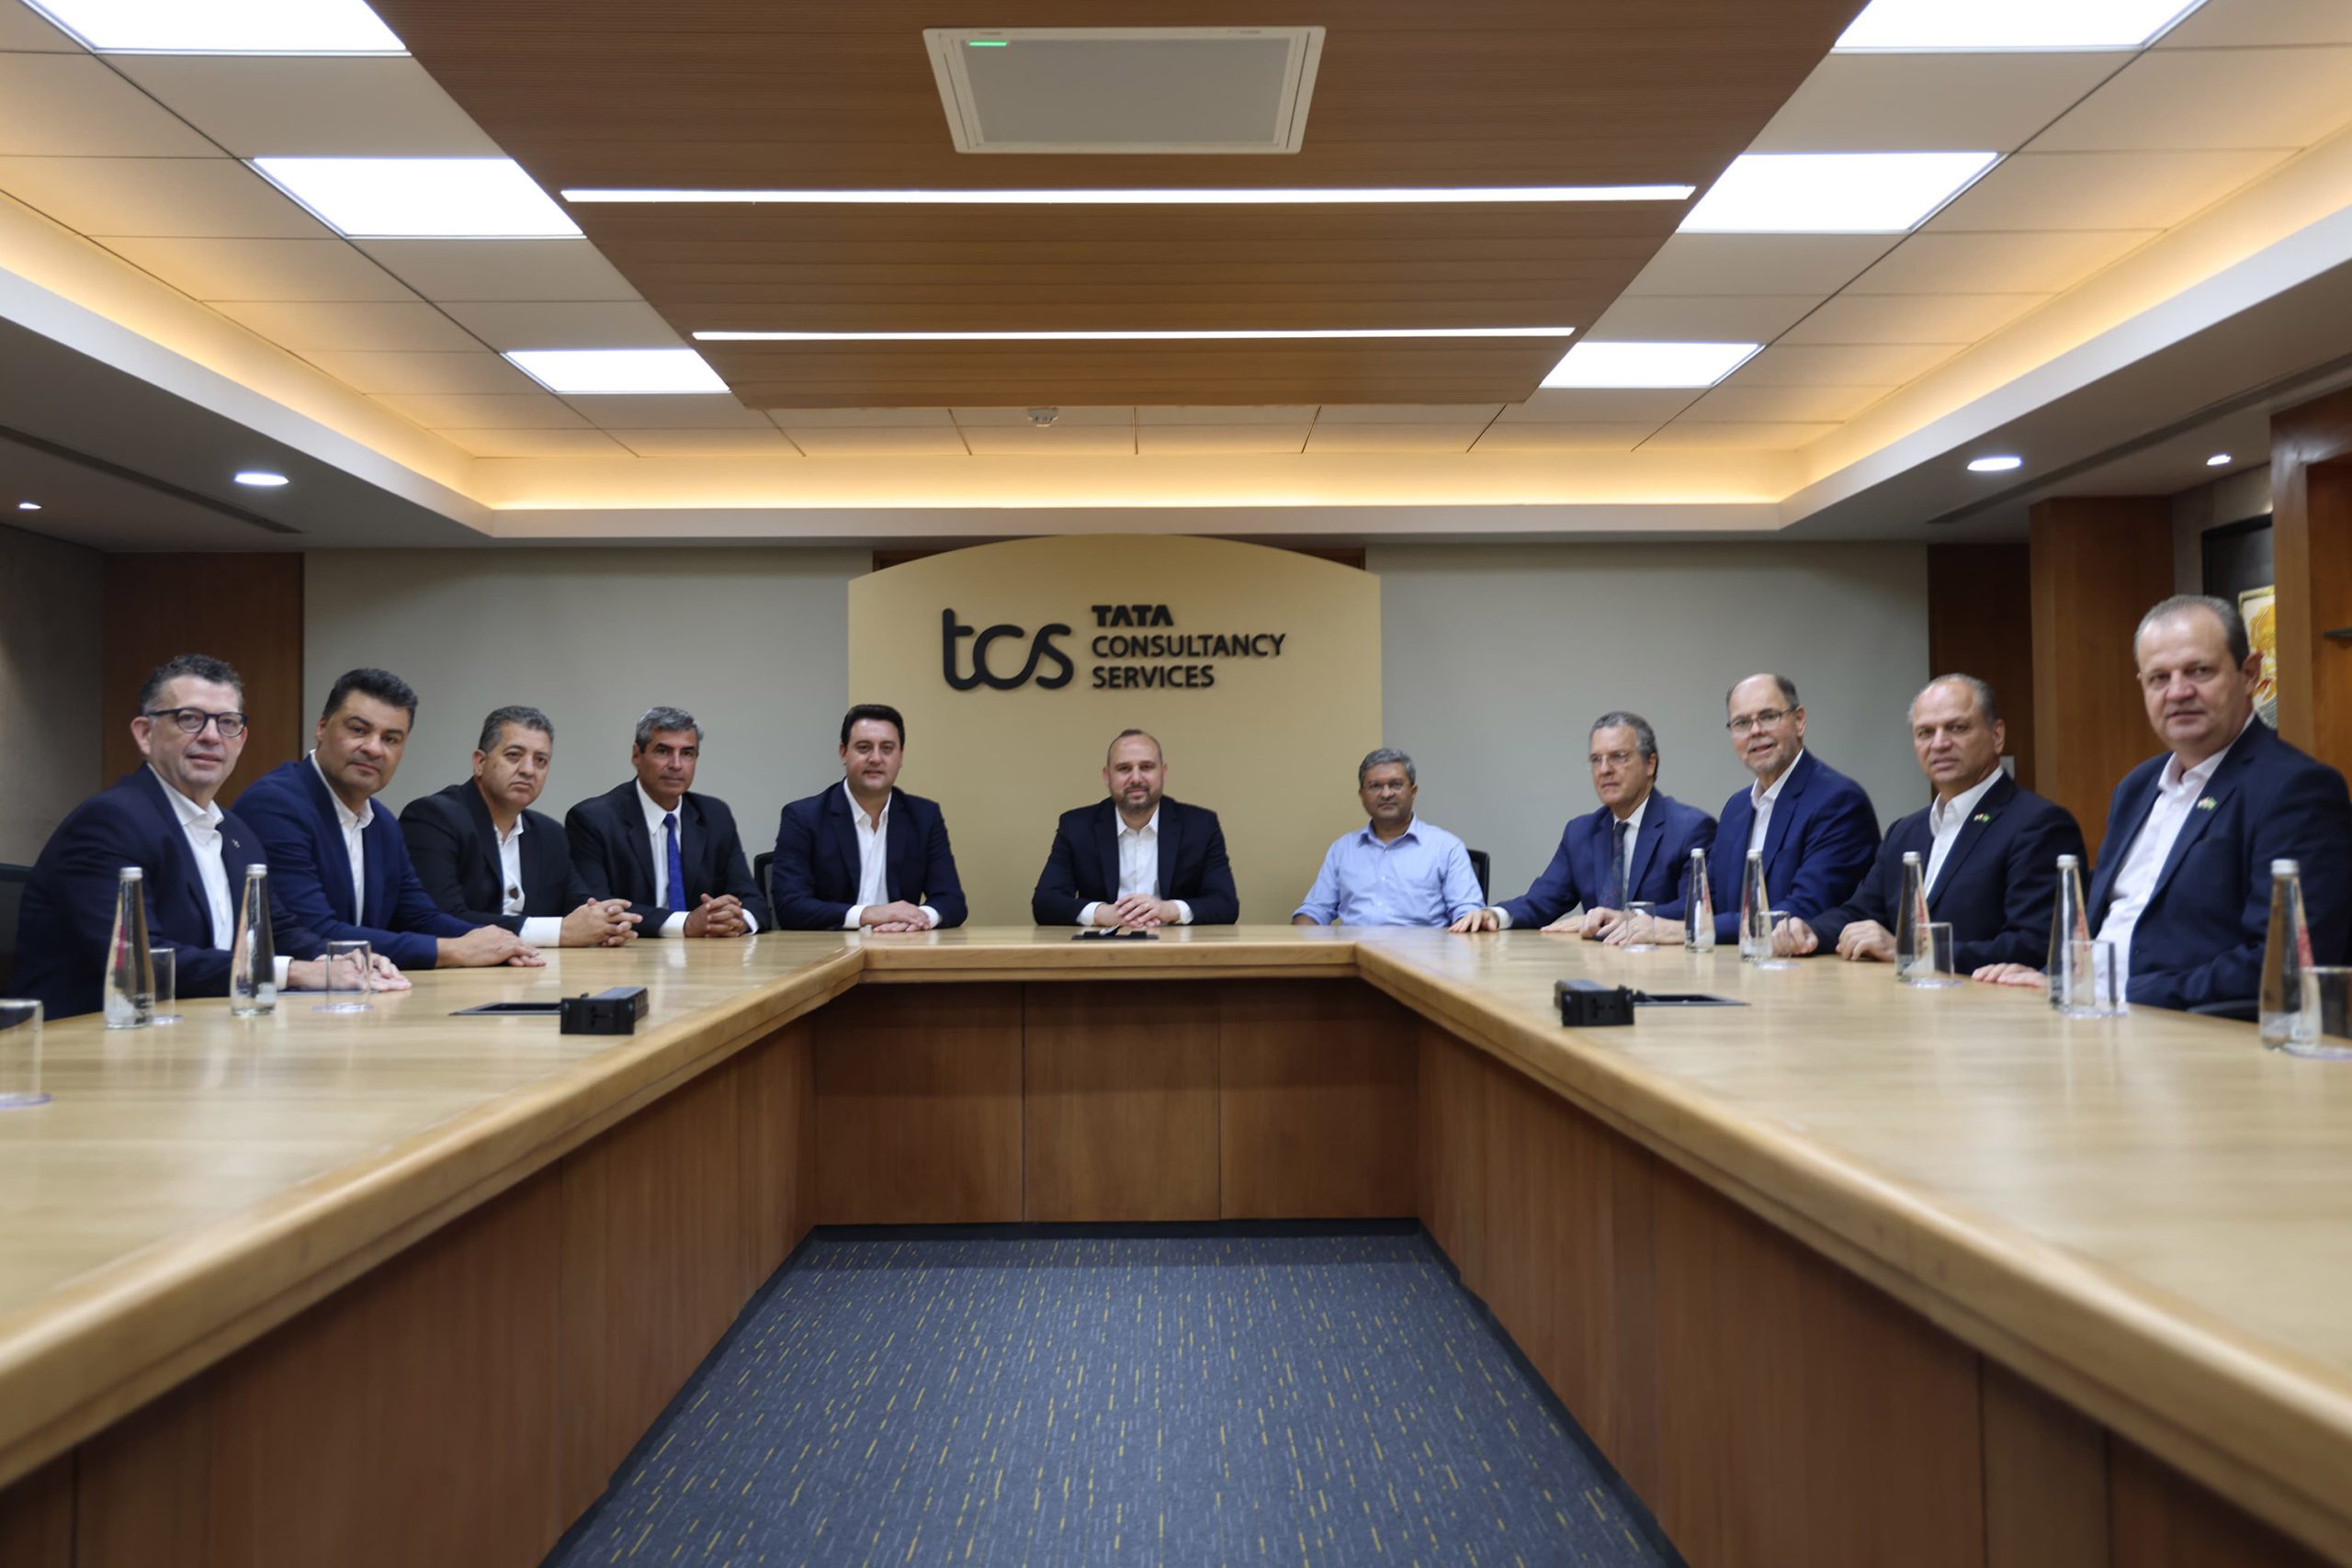 TCS anuncia expansão em Londrina com a geração de mais 1,6 mil vagas